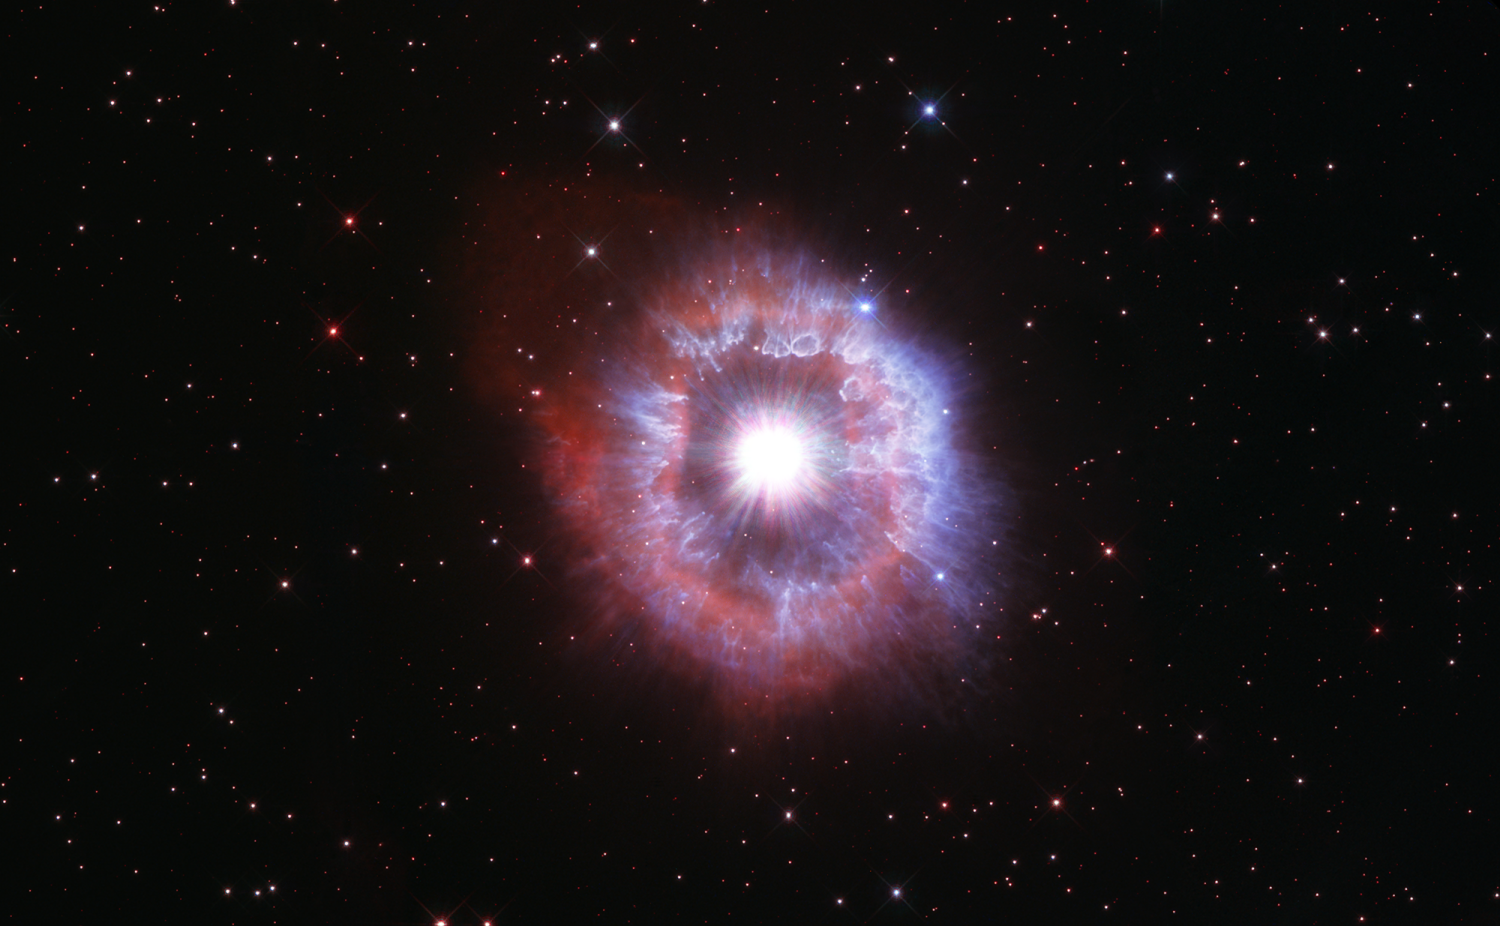 Supermasivna zvijezda. Izvor Hubble Space Telescope / NASA, ESA, STScI.